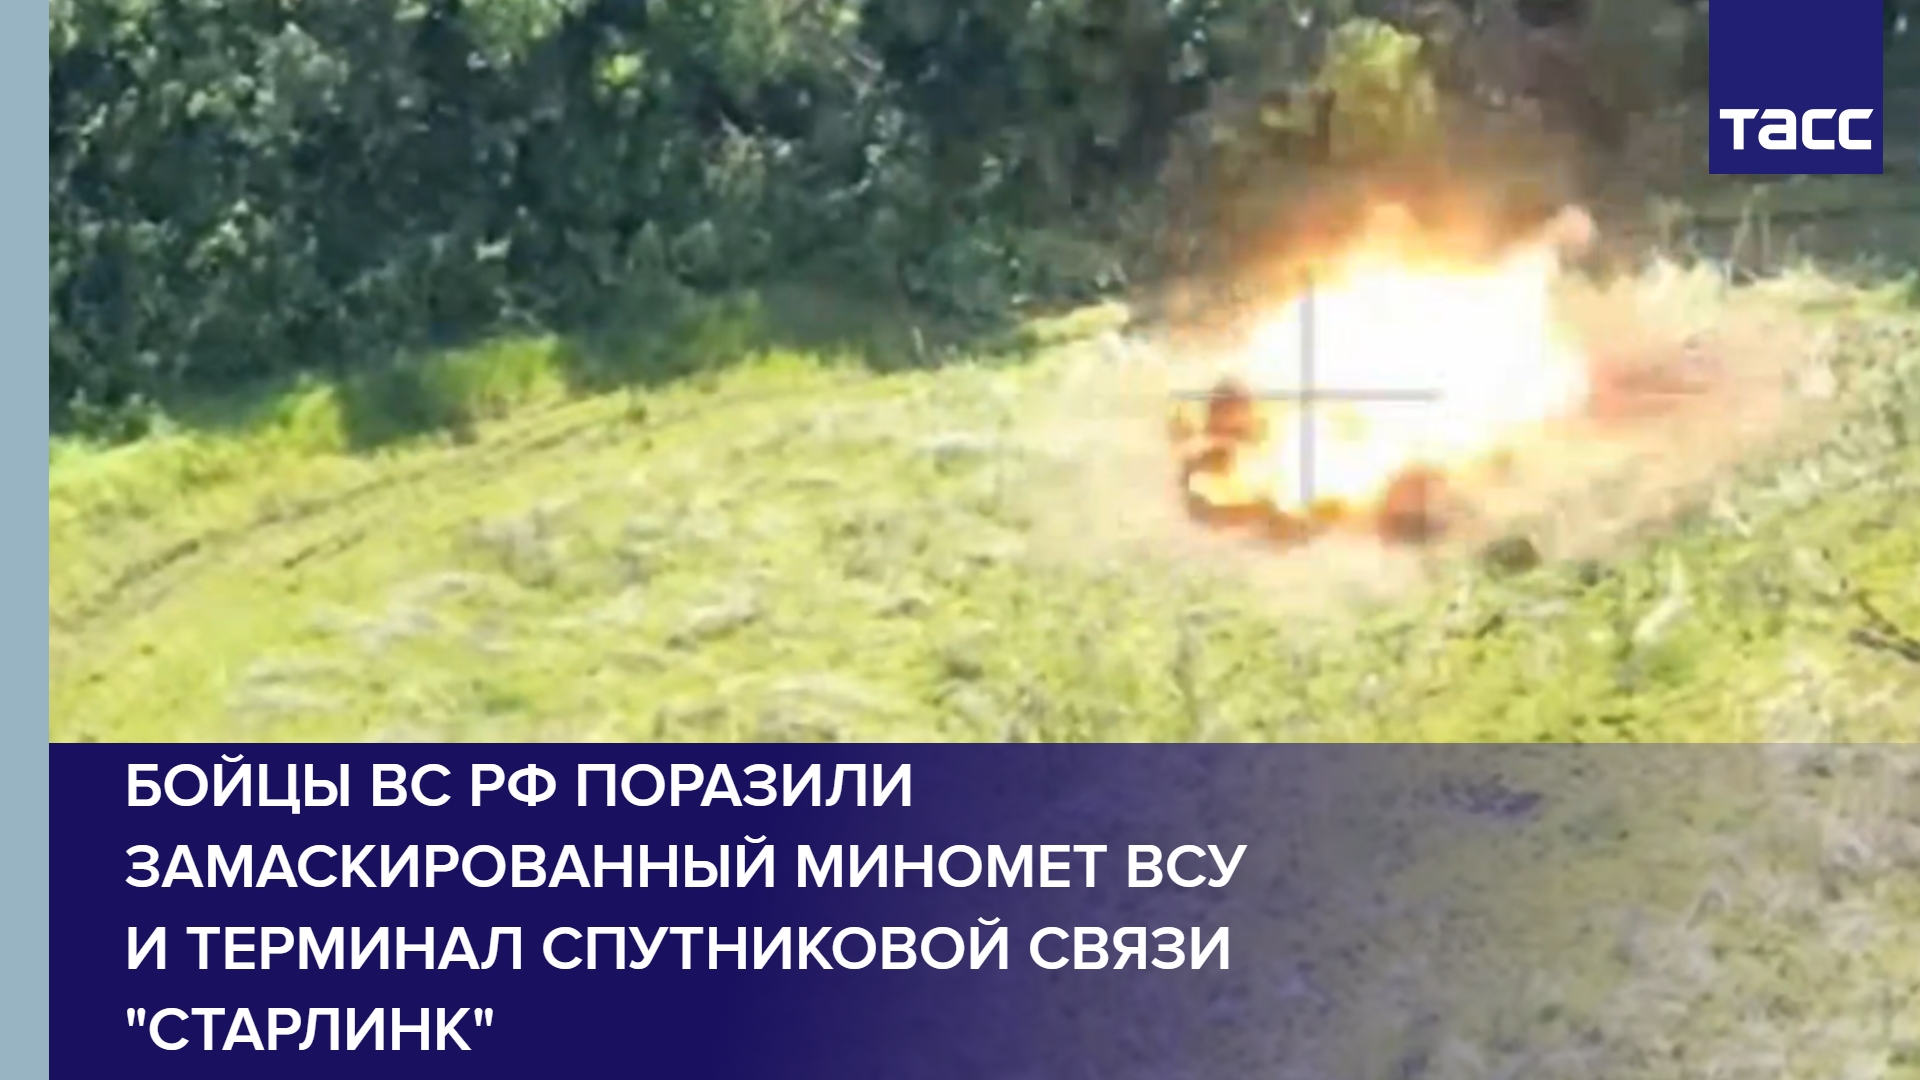 Бойцы ВС РФ поразили замаскированный миномет ВСУ и терминал спутниковой связи "Старлинк"